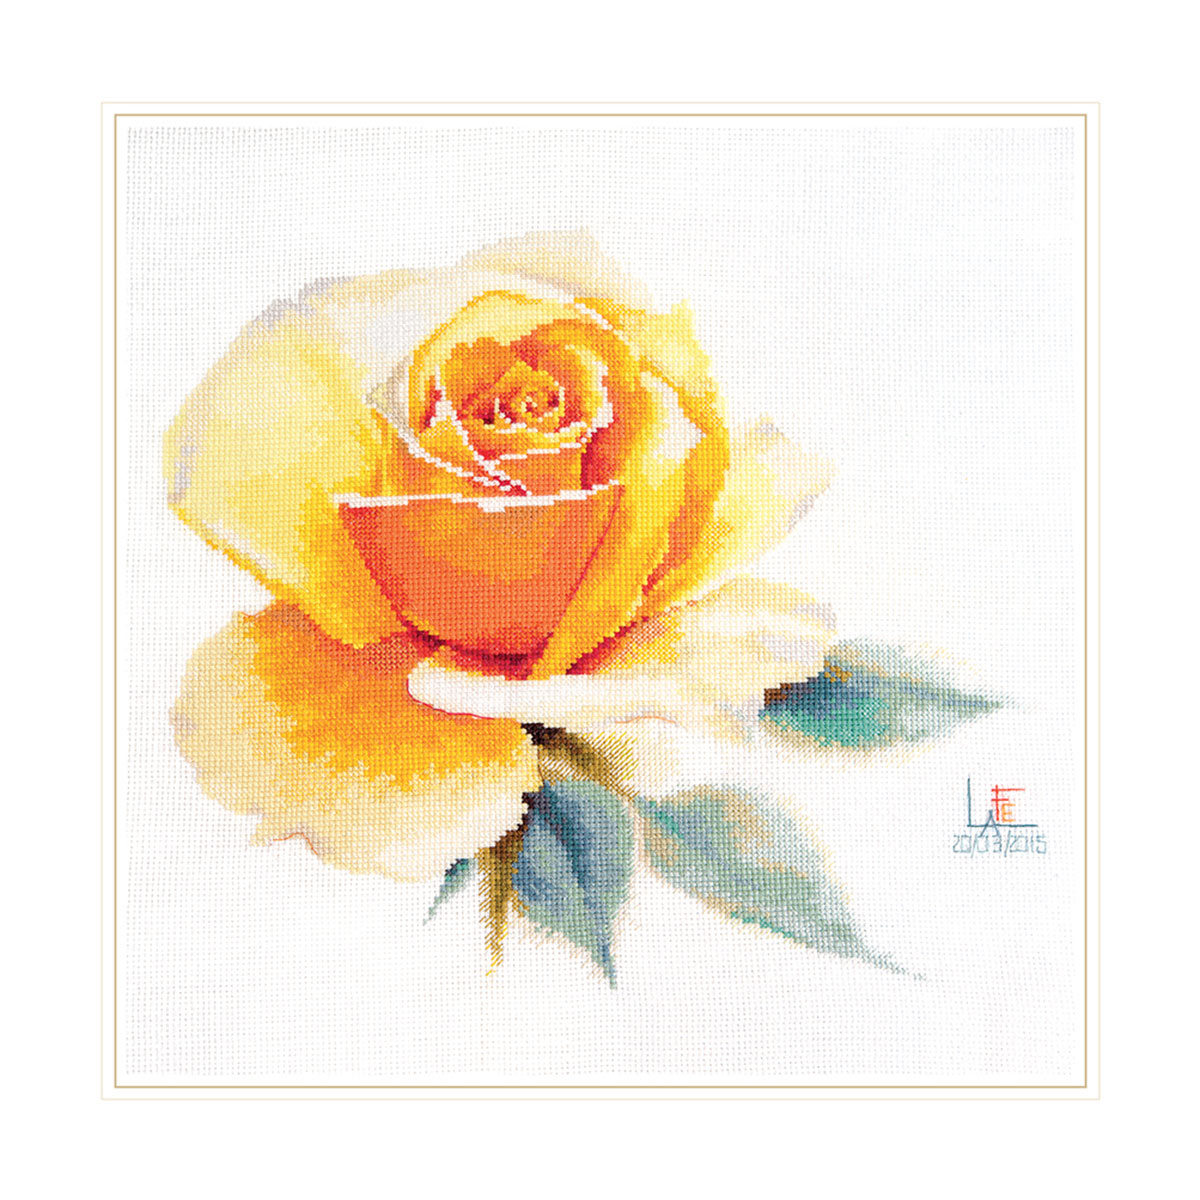 2-52 Набор для вышивания АЛИСА 'Акварельные розы. Желтая элегантная' 24*26см